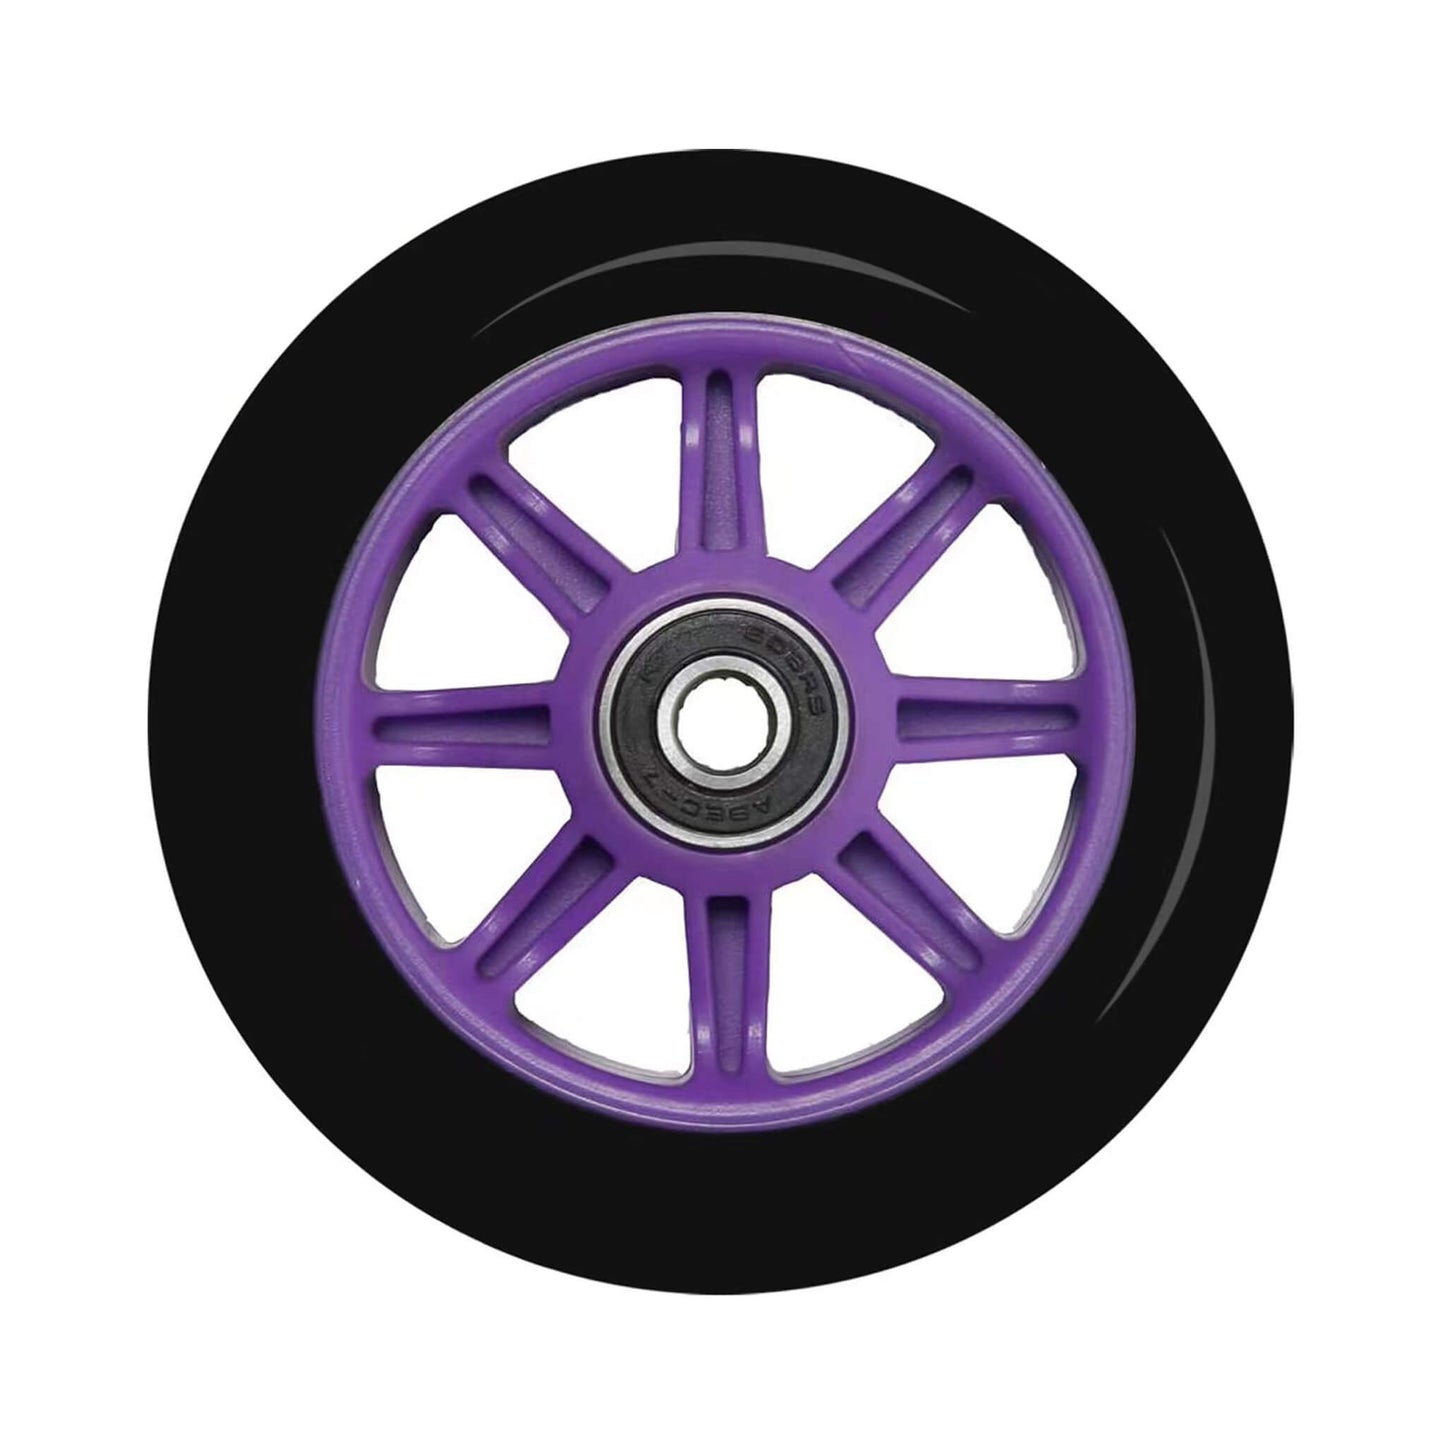 100mm-purple-scooter-wheels